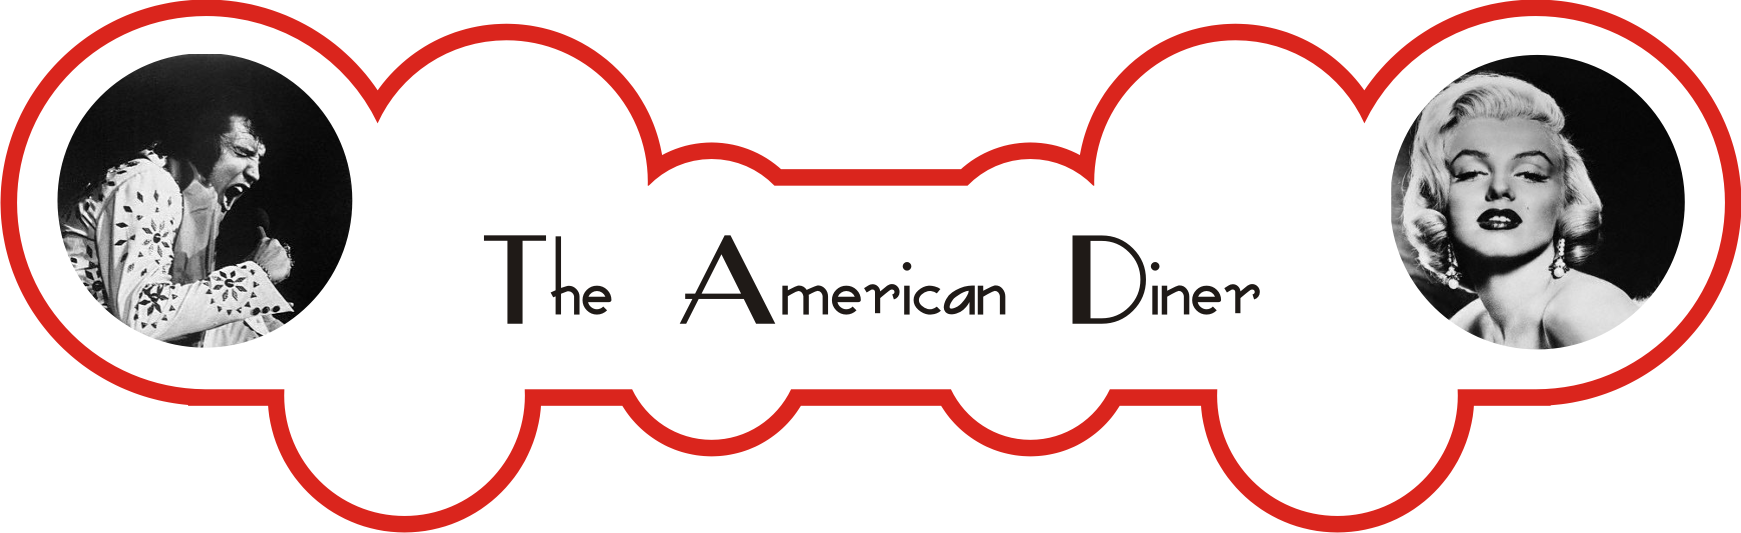 American Diner banner